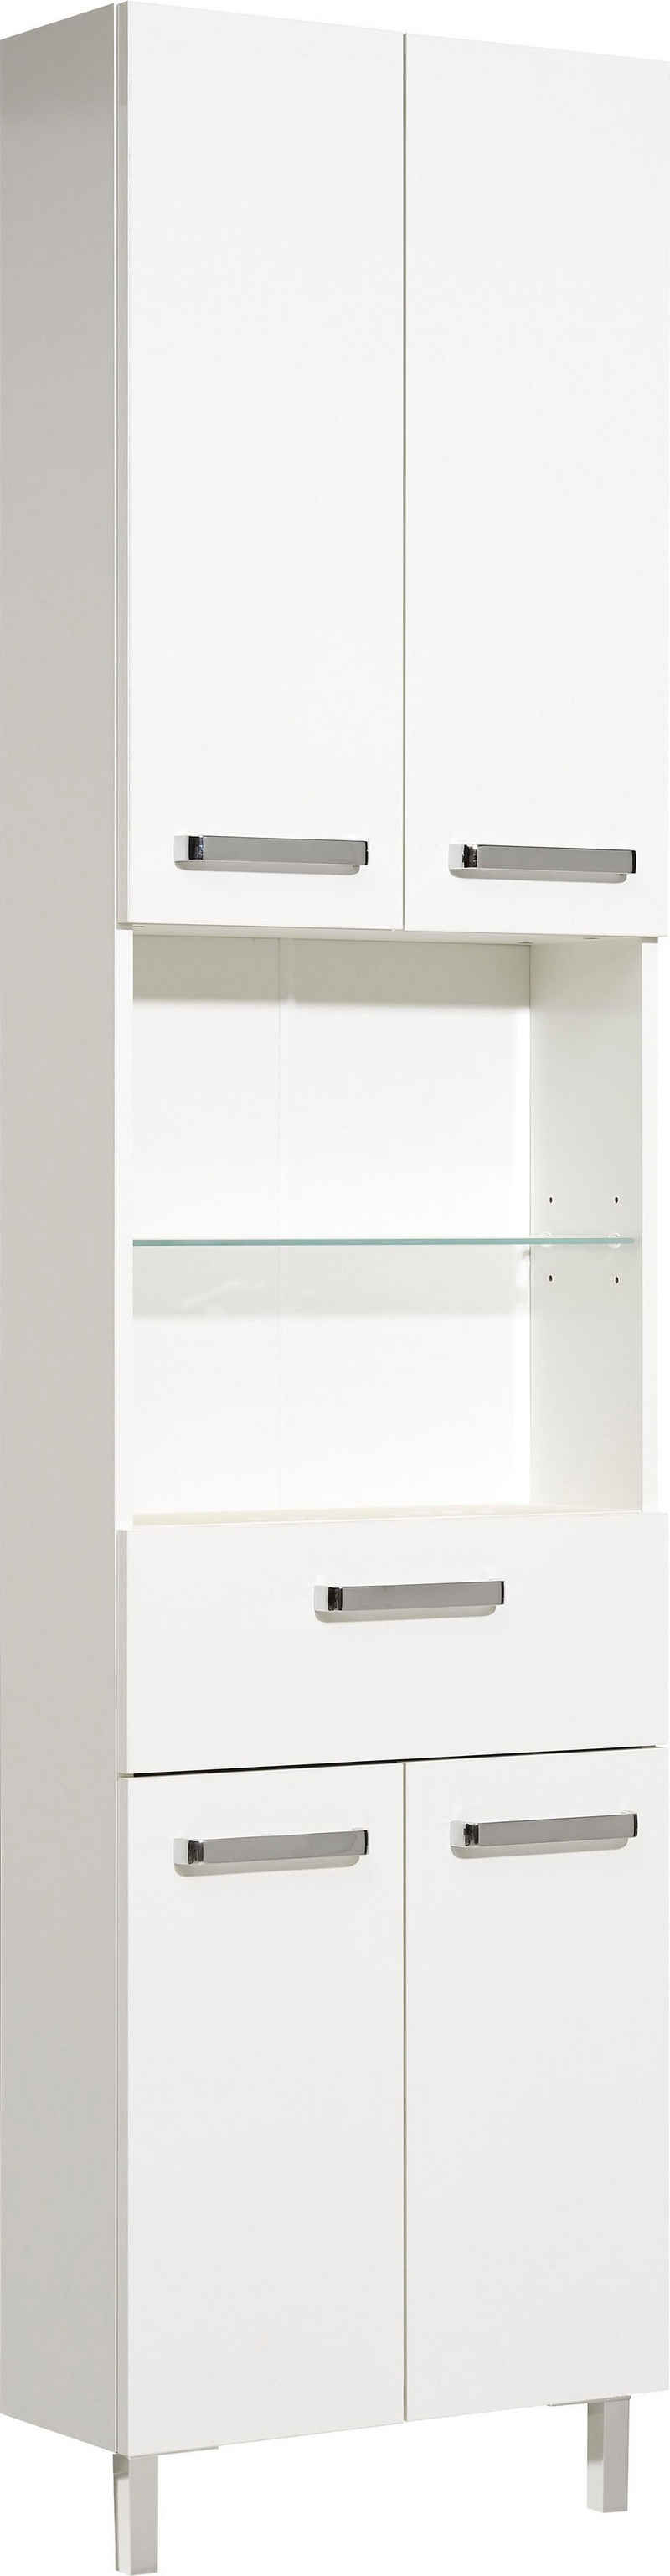 Saphir Hochschrank Quickset Badschrank 50 cm breit, 4 Türen, 2 Nischen, 1 Schublade Badezimmer-Hochschrank inkl. Türdämpfer, Griffe in Chrom glänzend